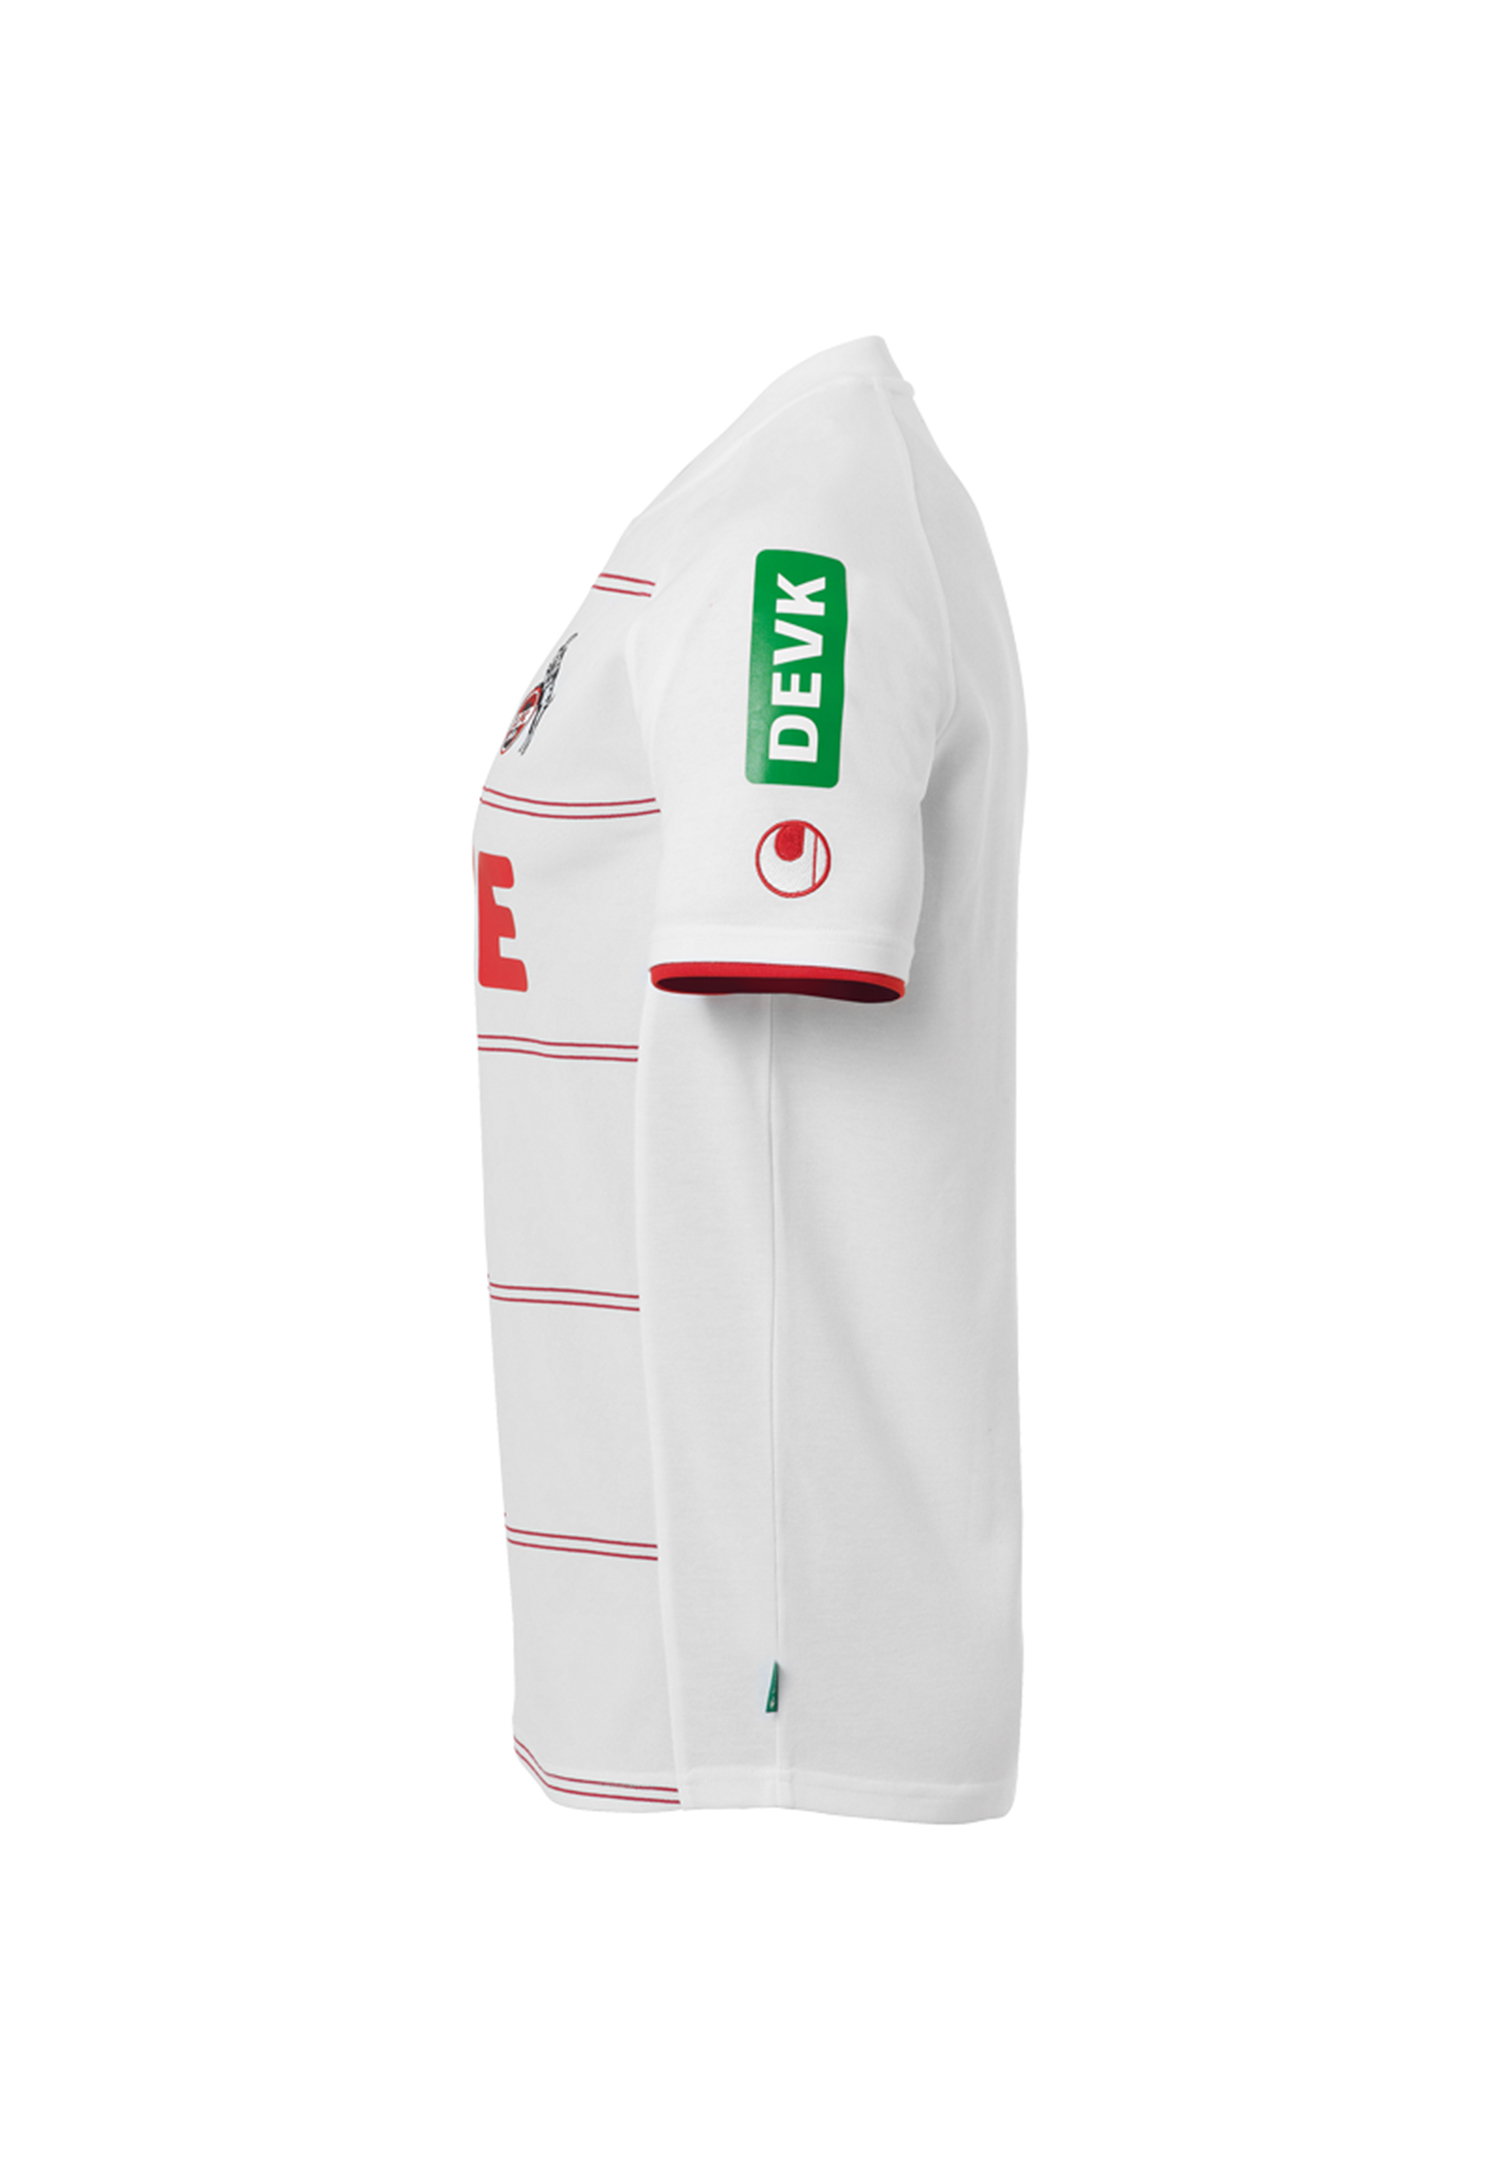 Uhlsport 1.FC Köln Heimtrikot 2021/2022 Unisex Shirt 